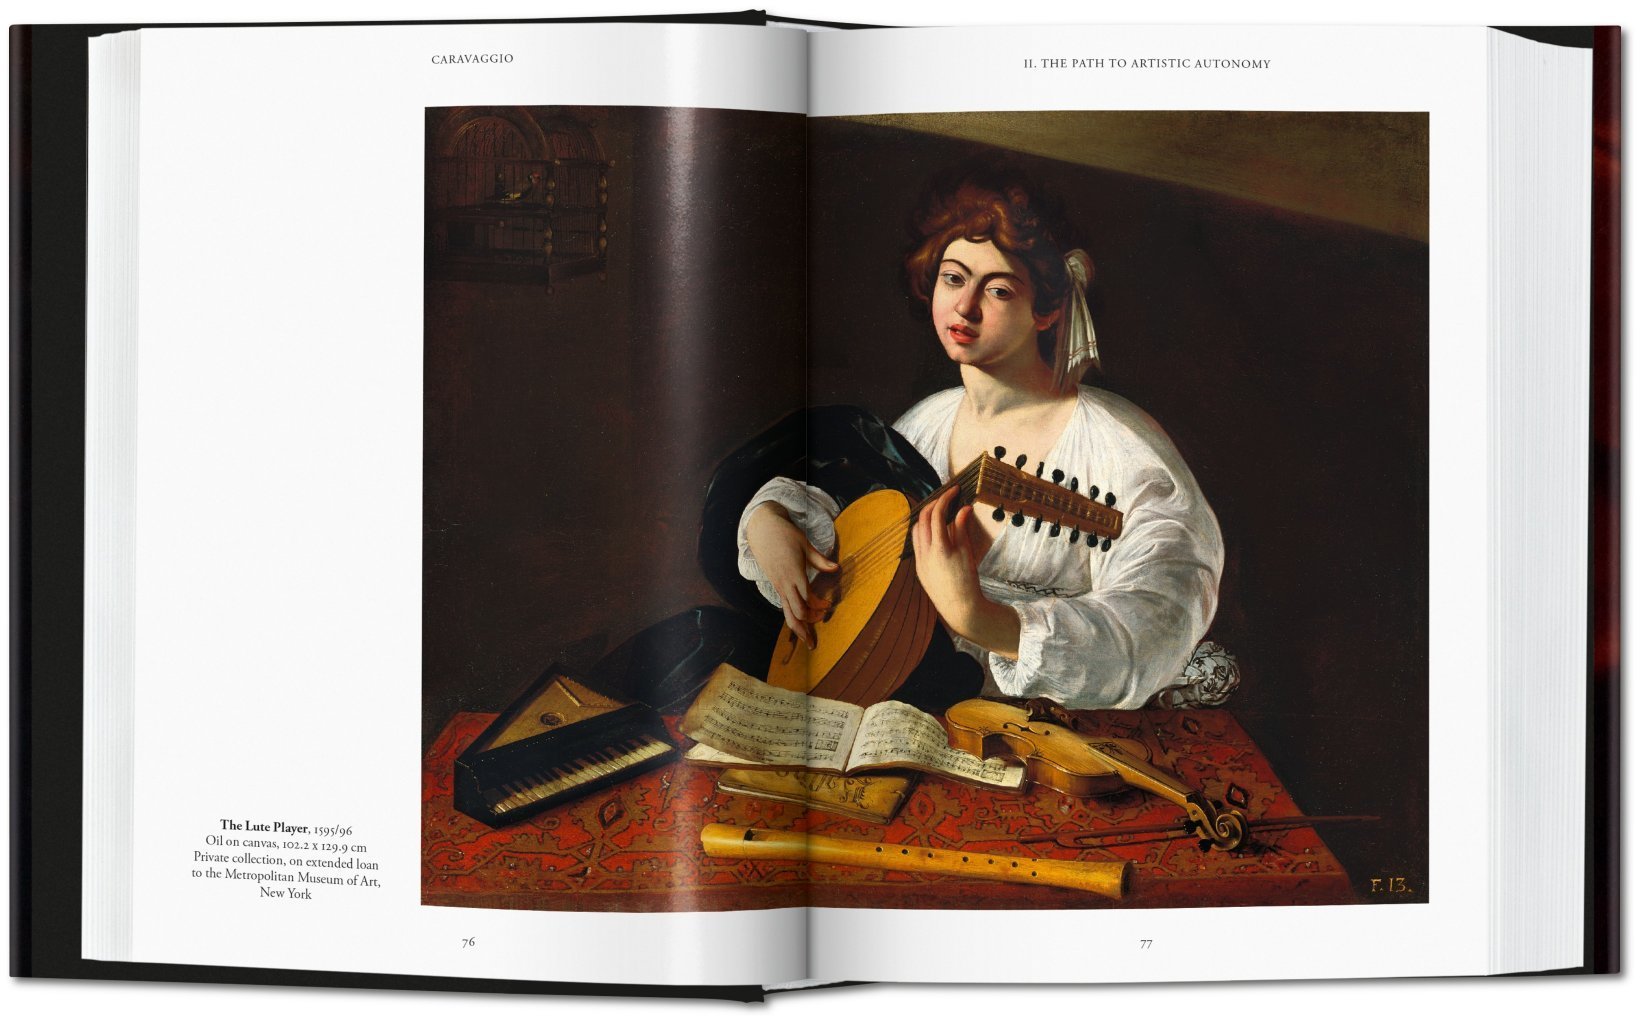 Caravaggio. The Complete Works | Sebastian Schutze